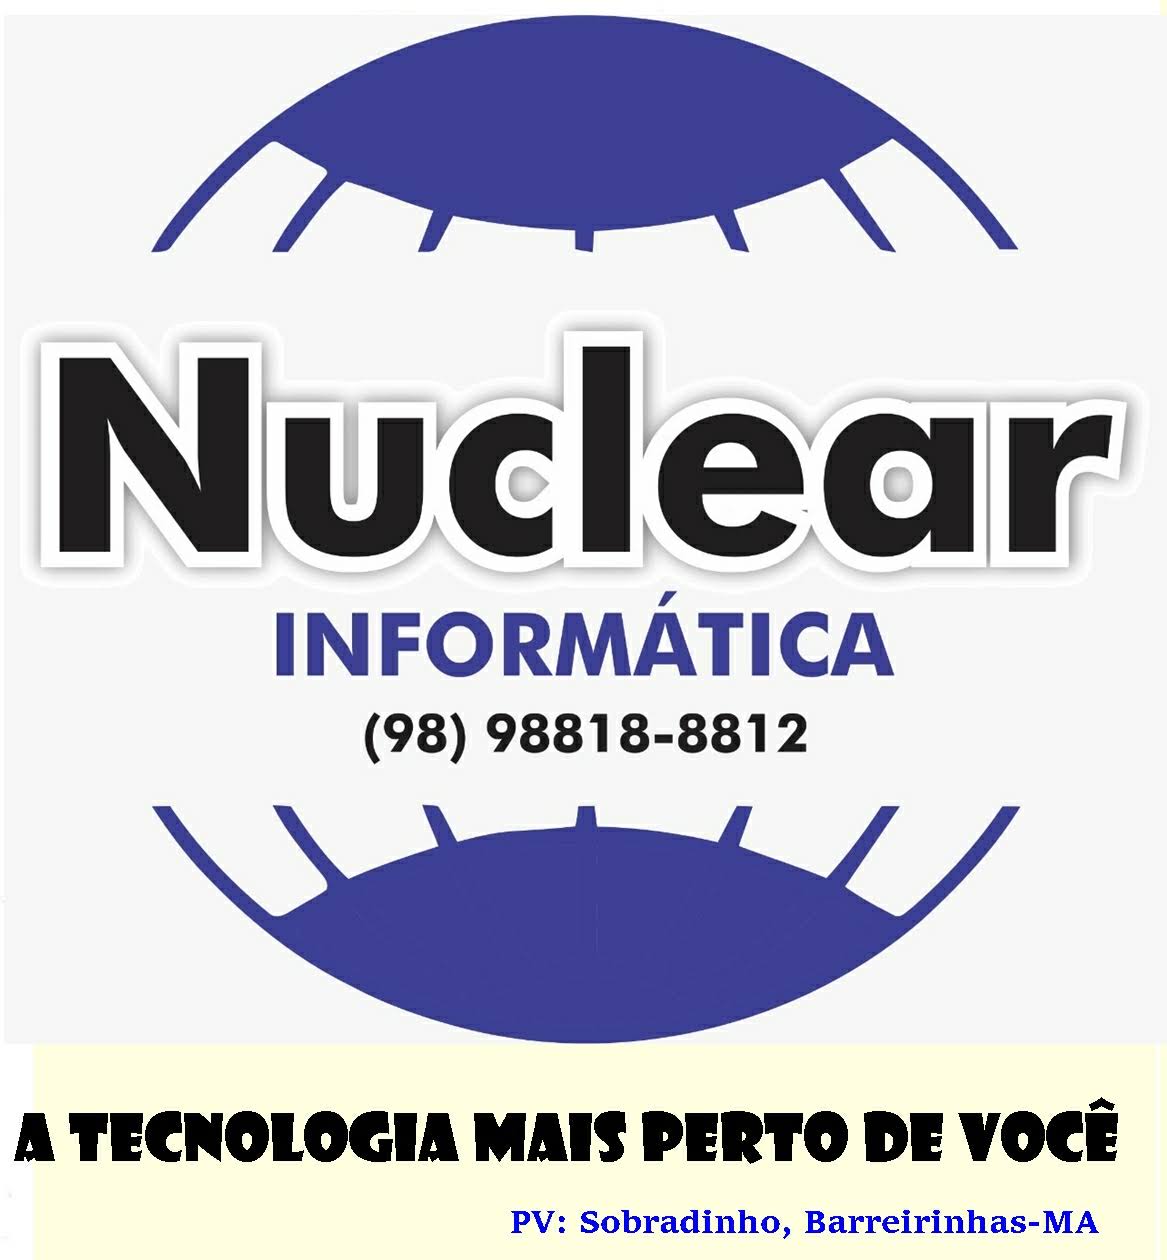 Nuclear Informática